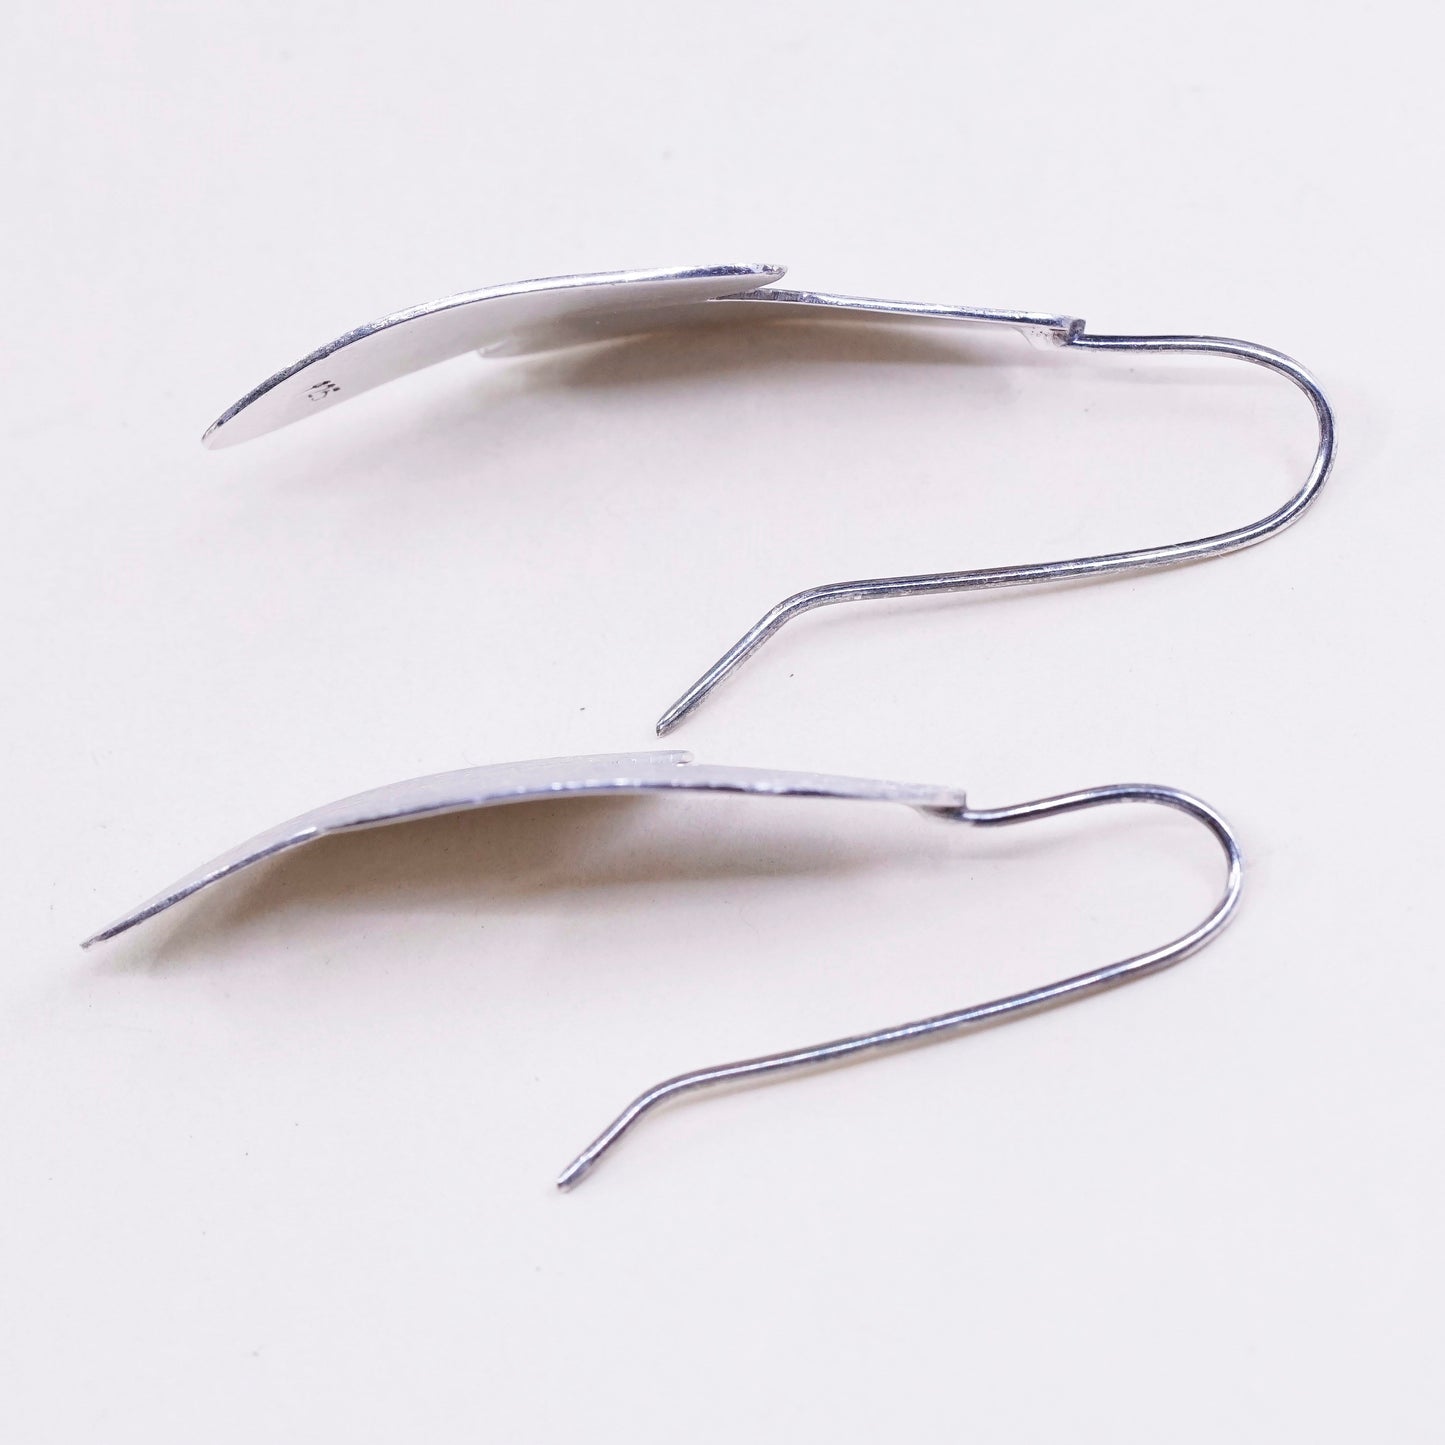 vtg Sterling silver handmade earrings, geometric leaf drops, Matt surface